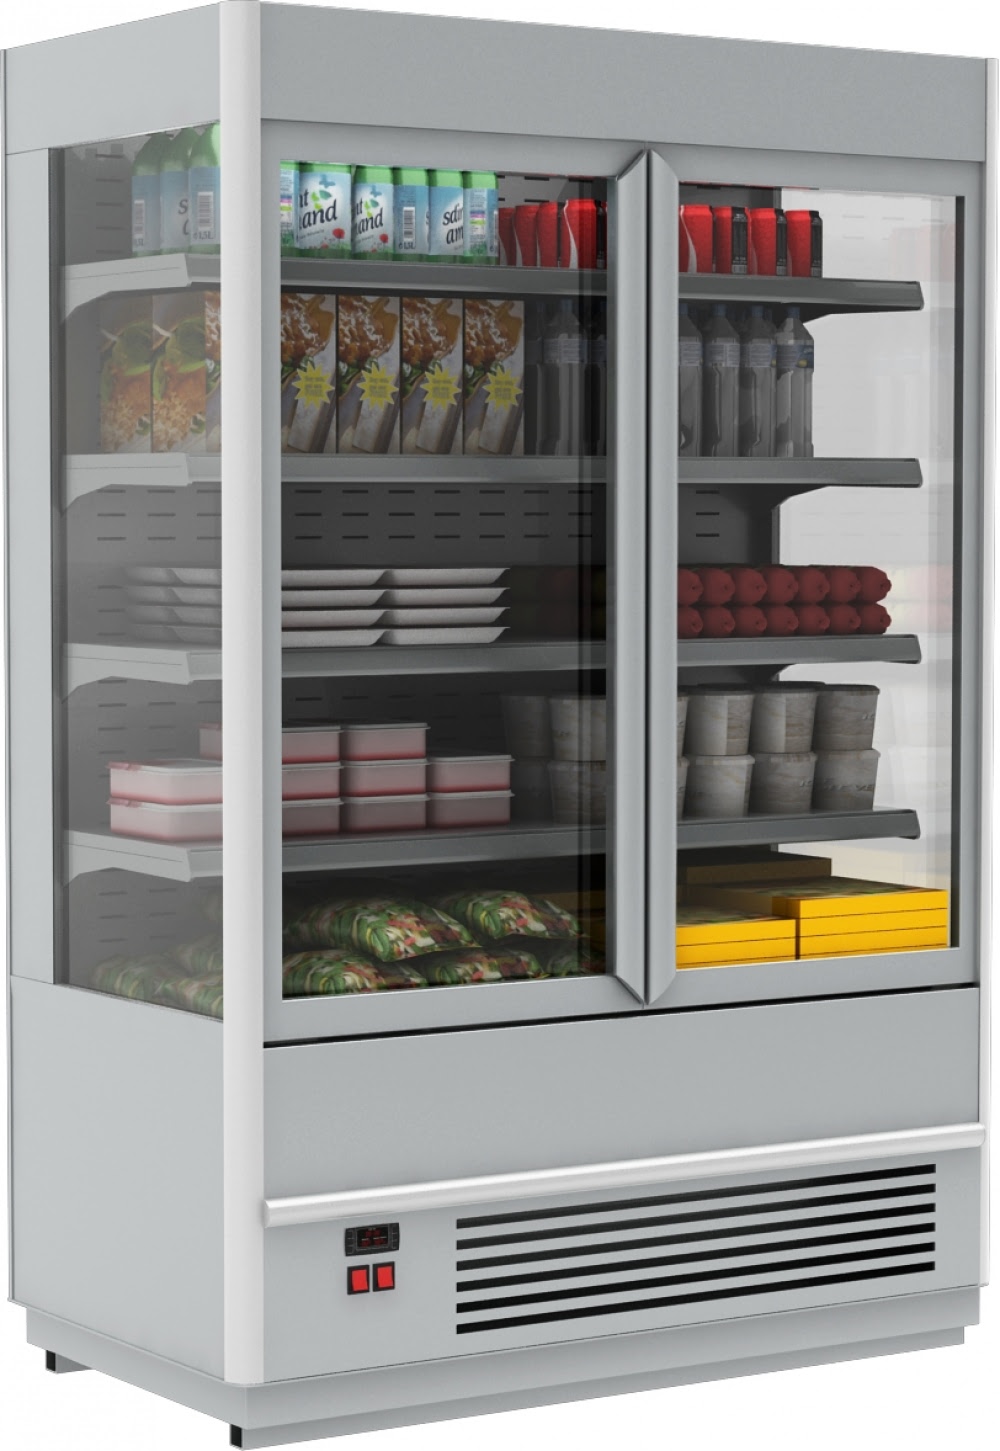 Холодильная горка CARBOMA CUBE STANDARD FC 20-08 VV 1,0-1 X5